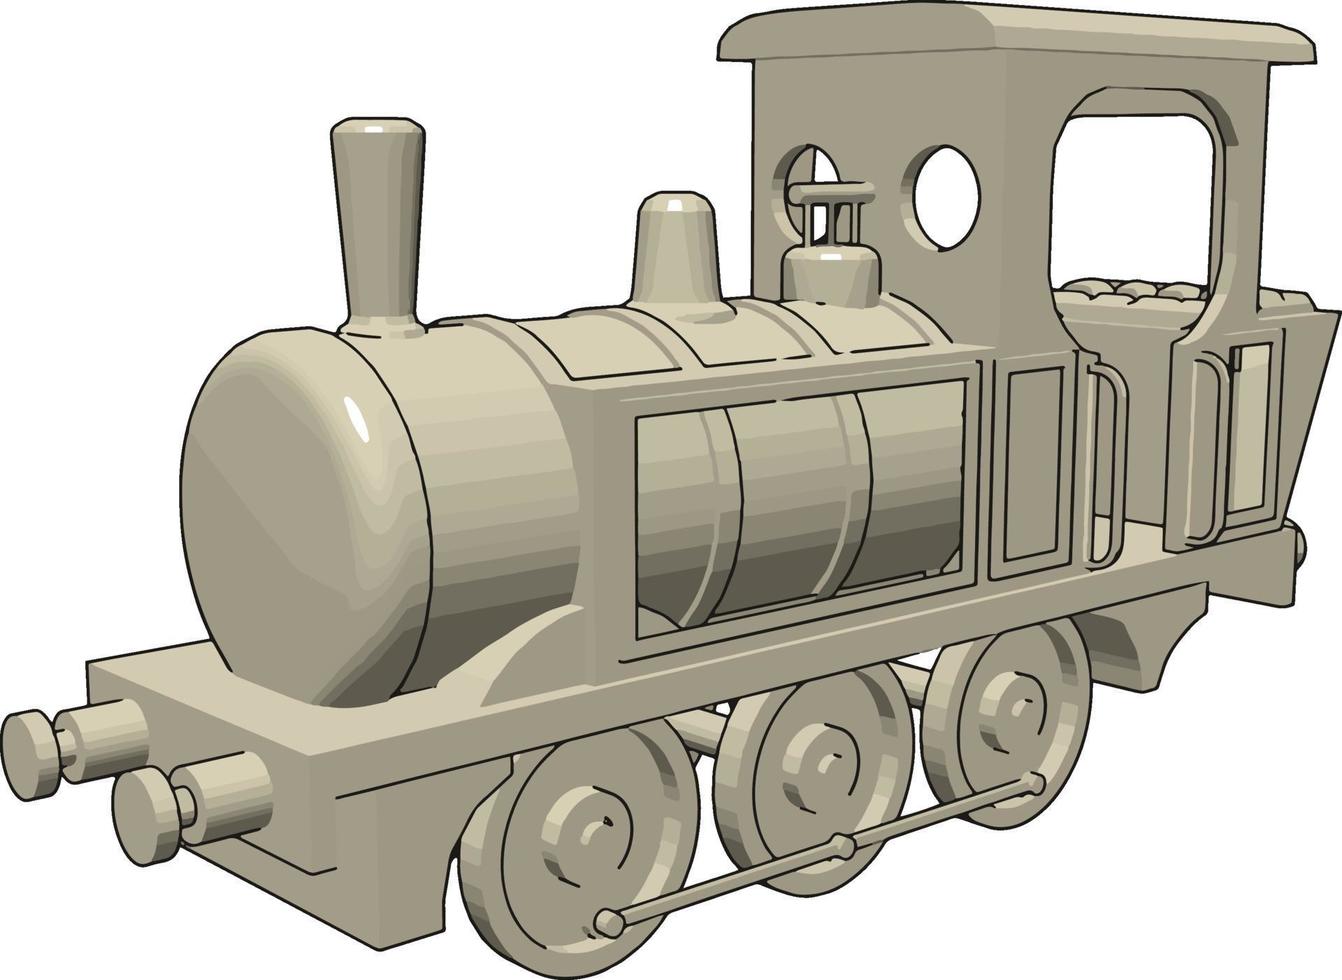 locomotora, ilustración, vector sobre fondo blanco.